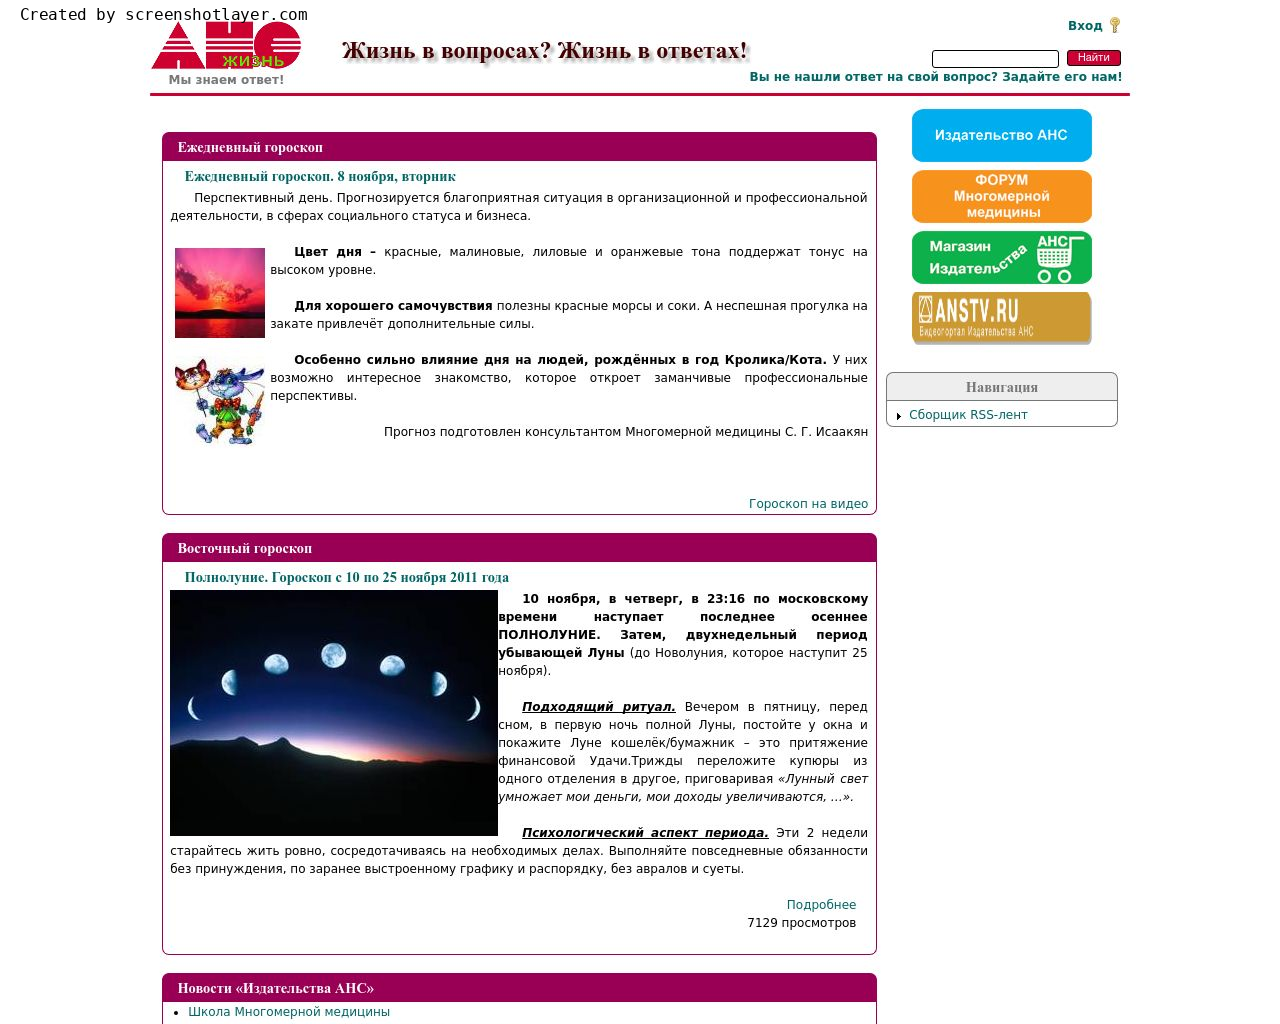 Изображение сайта anstv.ru в разрешении 1280x1024